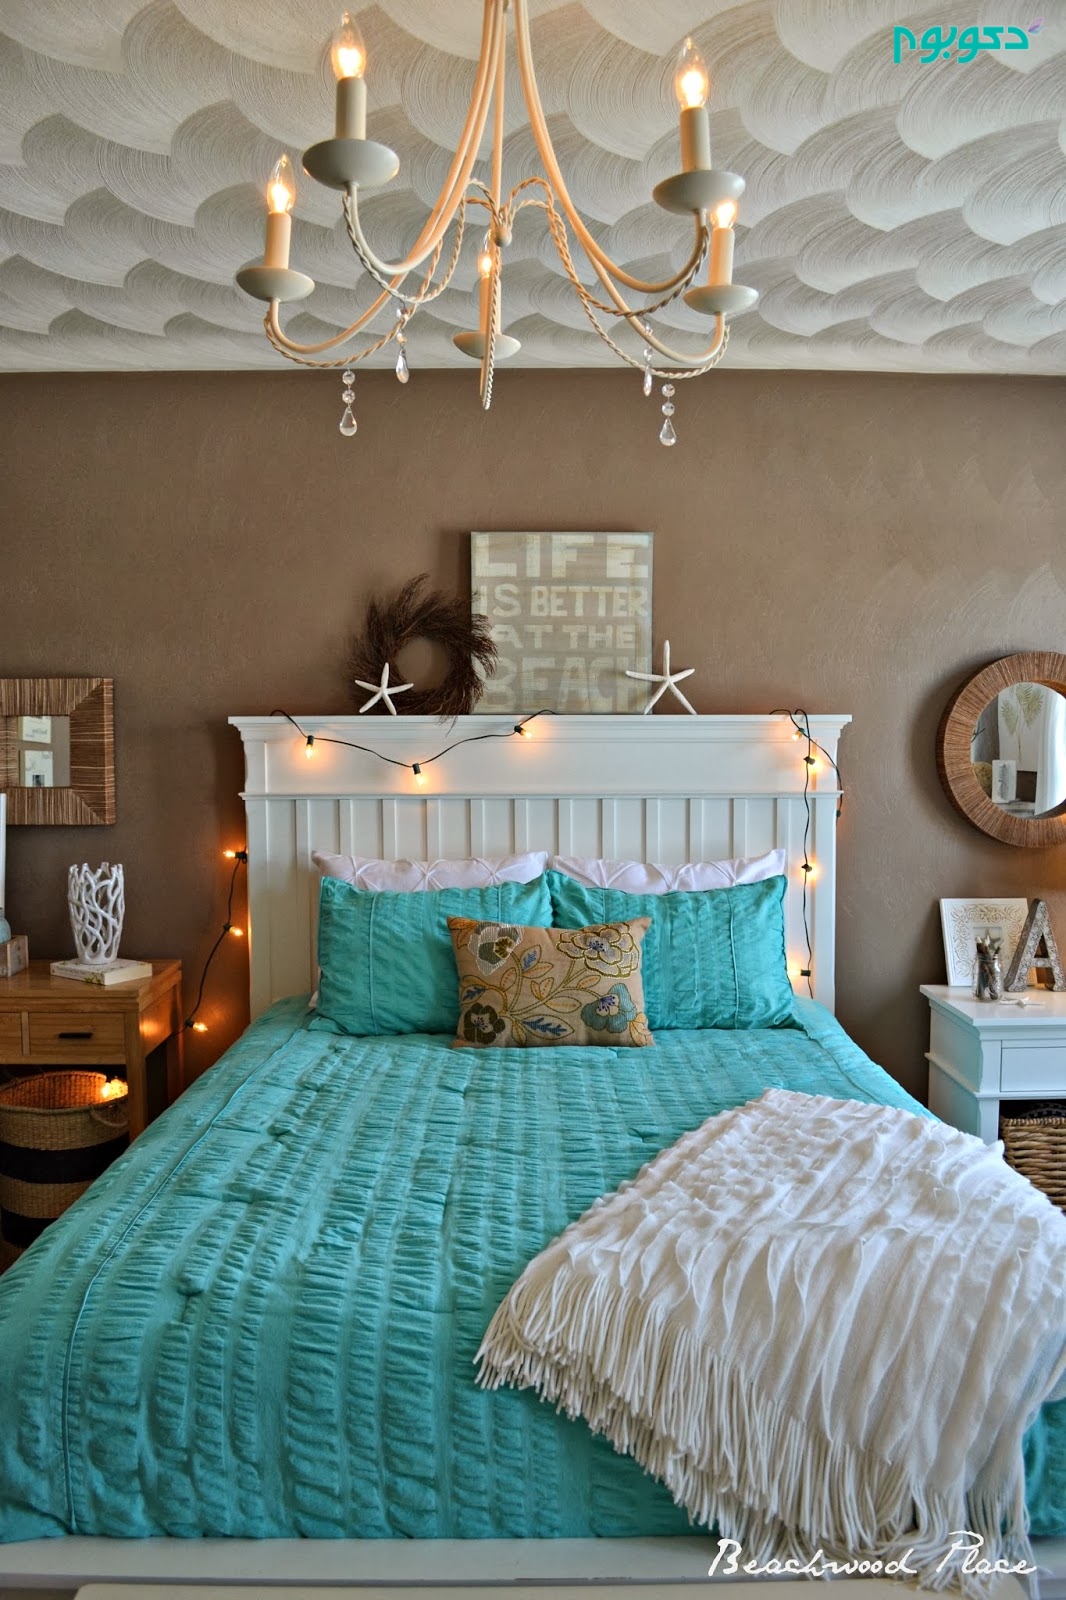 21-best-bedroom-design-tips-homebnc.jpg